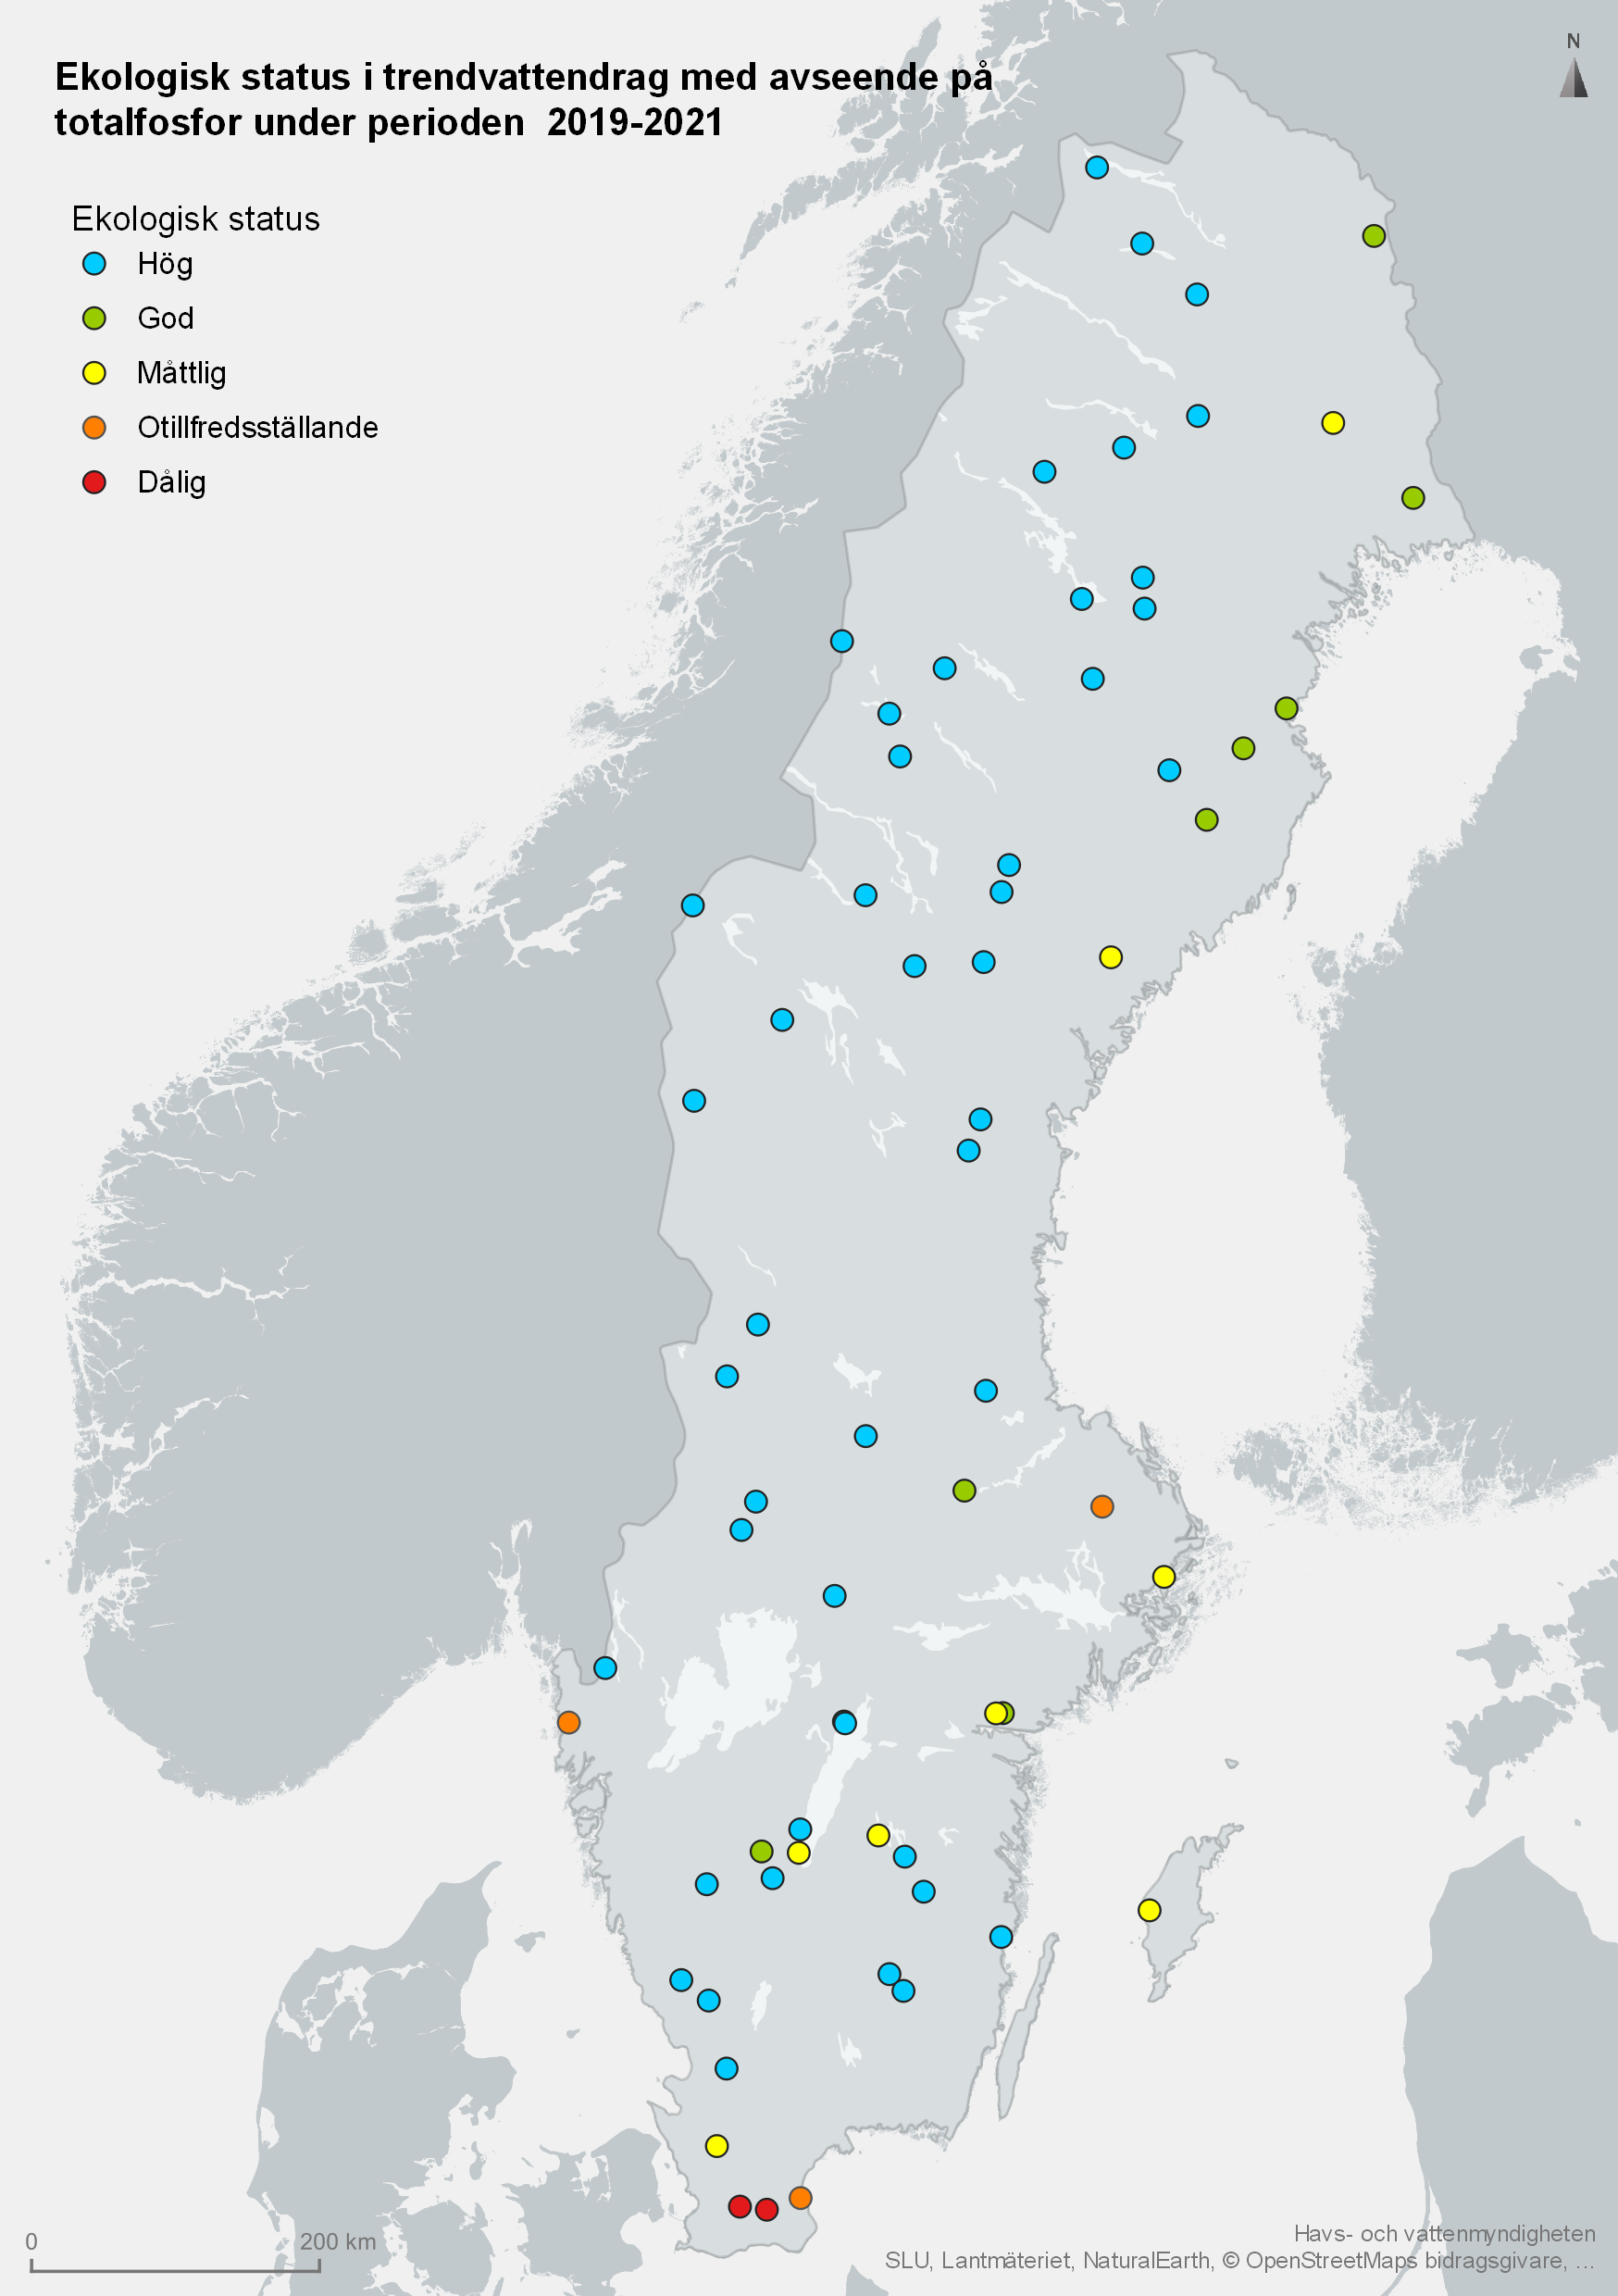 Trendvattendragens status vad gäller totalfosfor år 2019-2021. Karta, illustration.